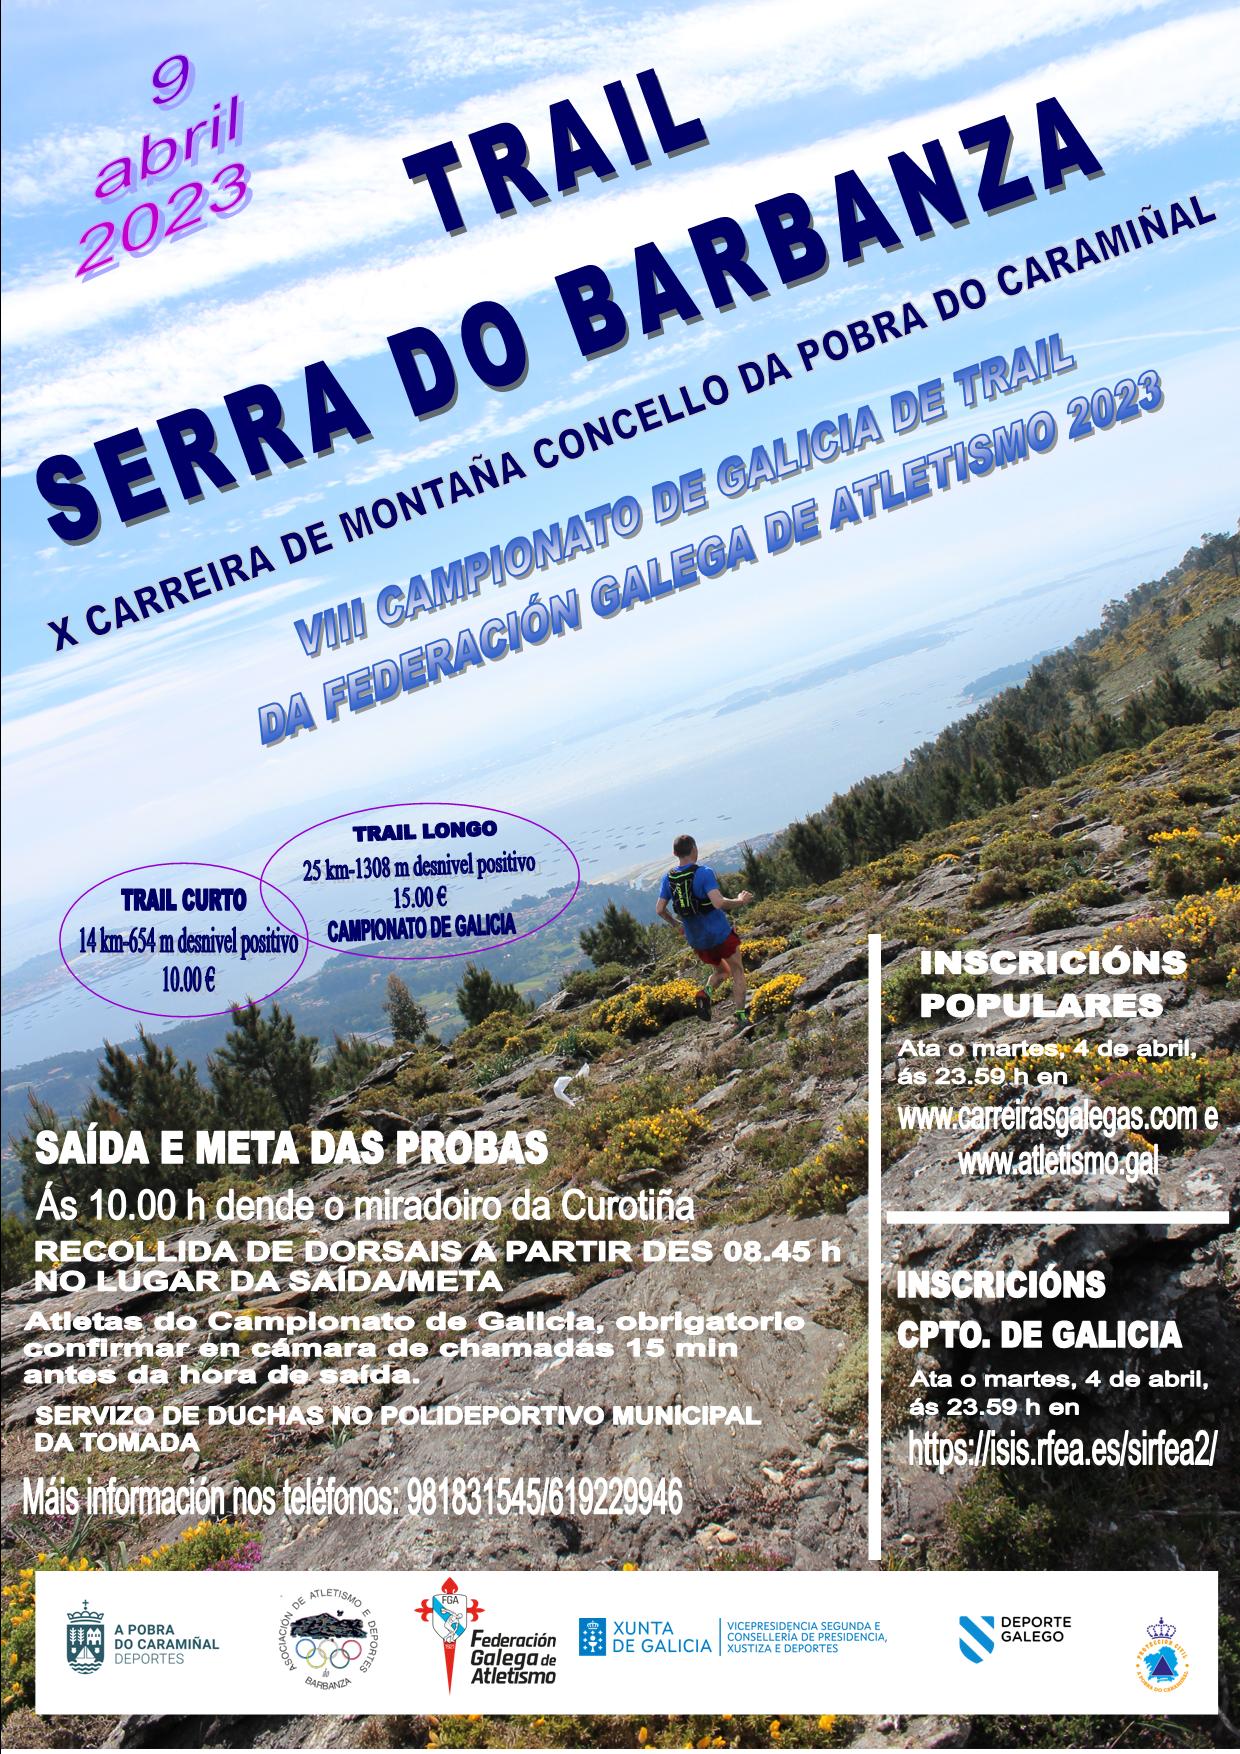 Trail Serra do Barbanza 2023